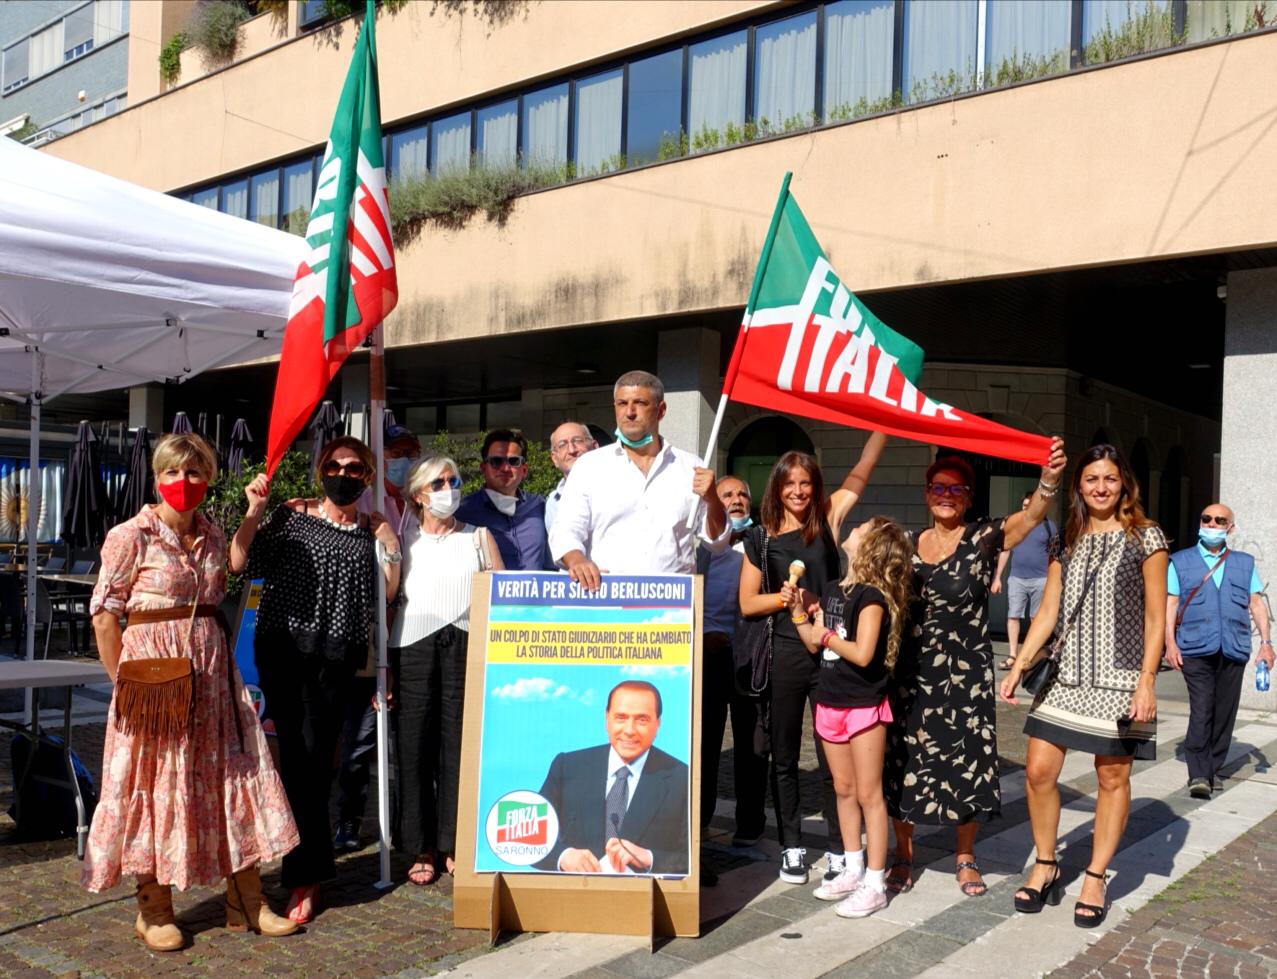 Miglino, De Marco, Silighini, Pellicciotta: Forza Italia in piazza a Saronno